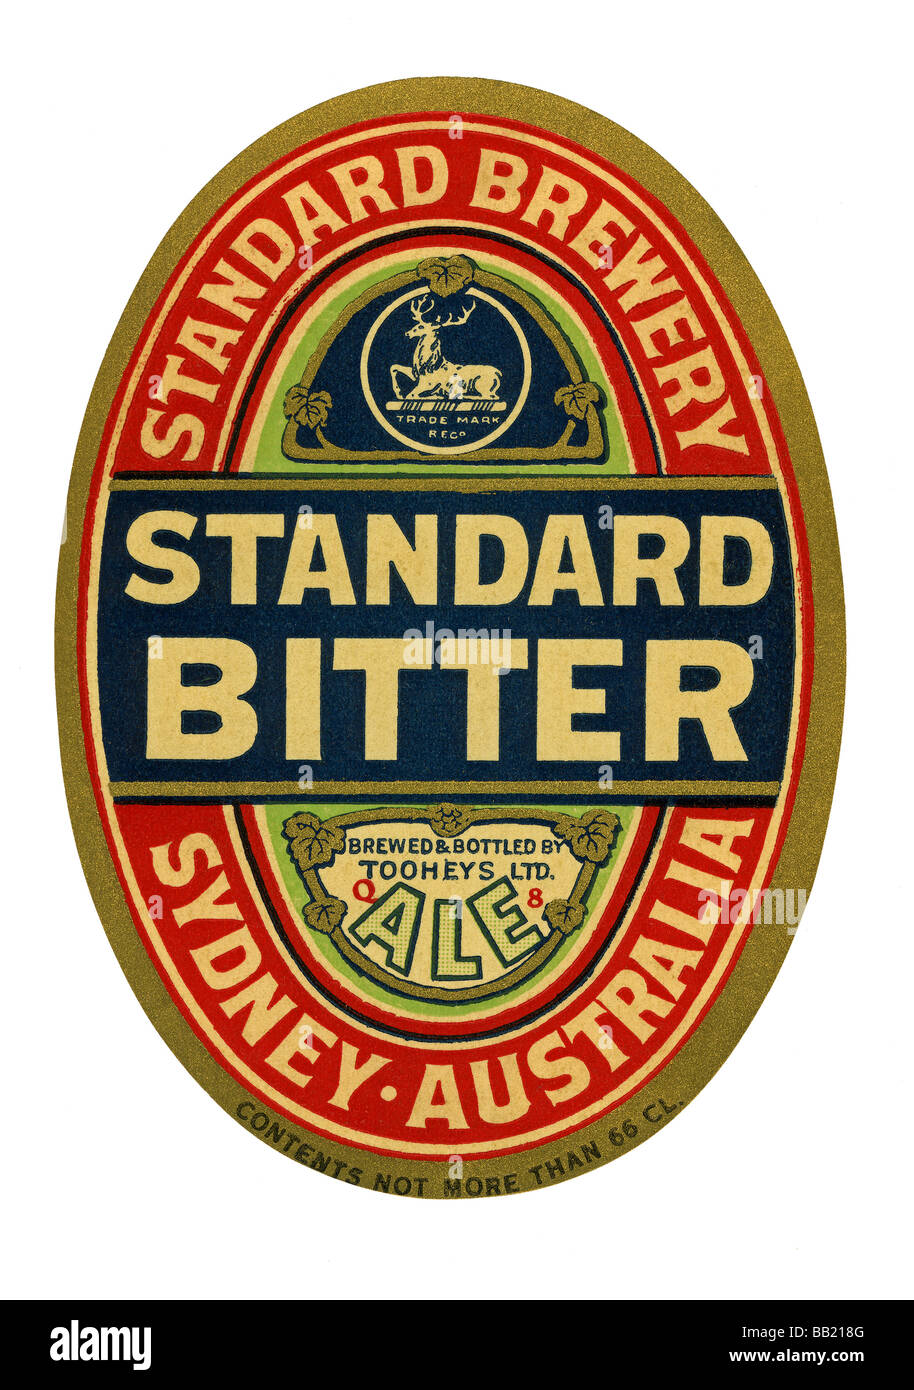 gerningsmanden essens Rationalisering Old Australian beer label for Standard Bitter, Sydney, New South Wales  Stock Photo - Alamy